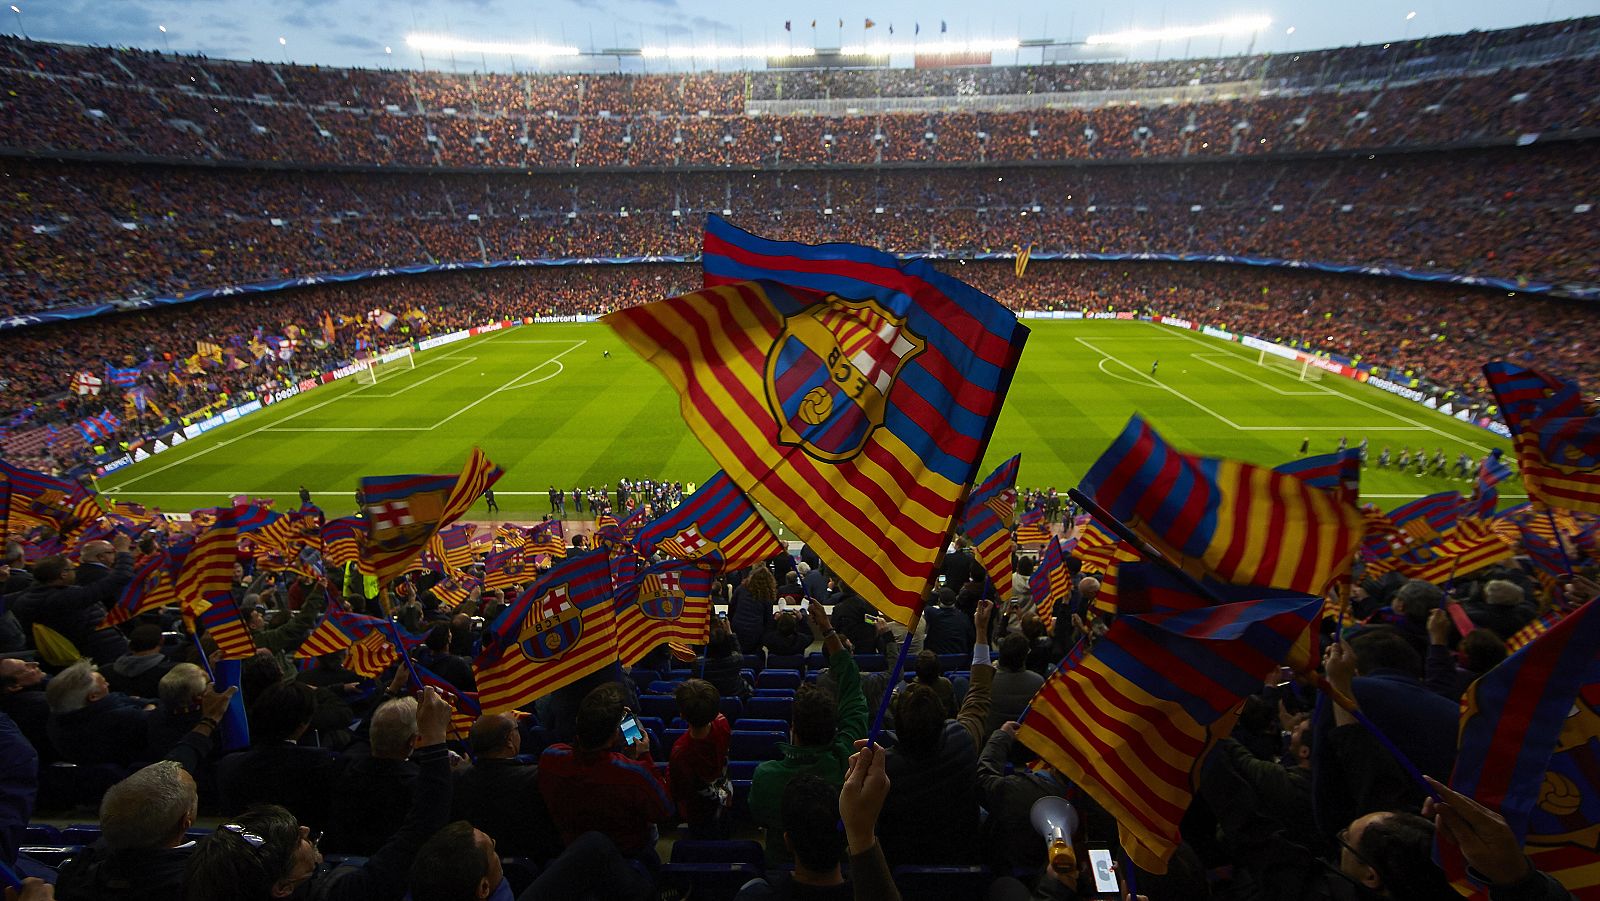 El Camp Nou, estadio del FC Barcelona.